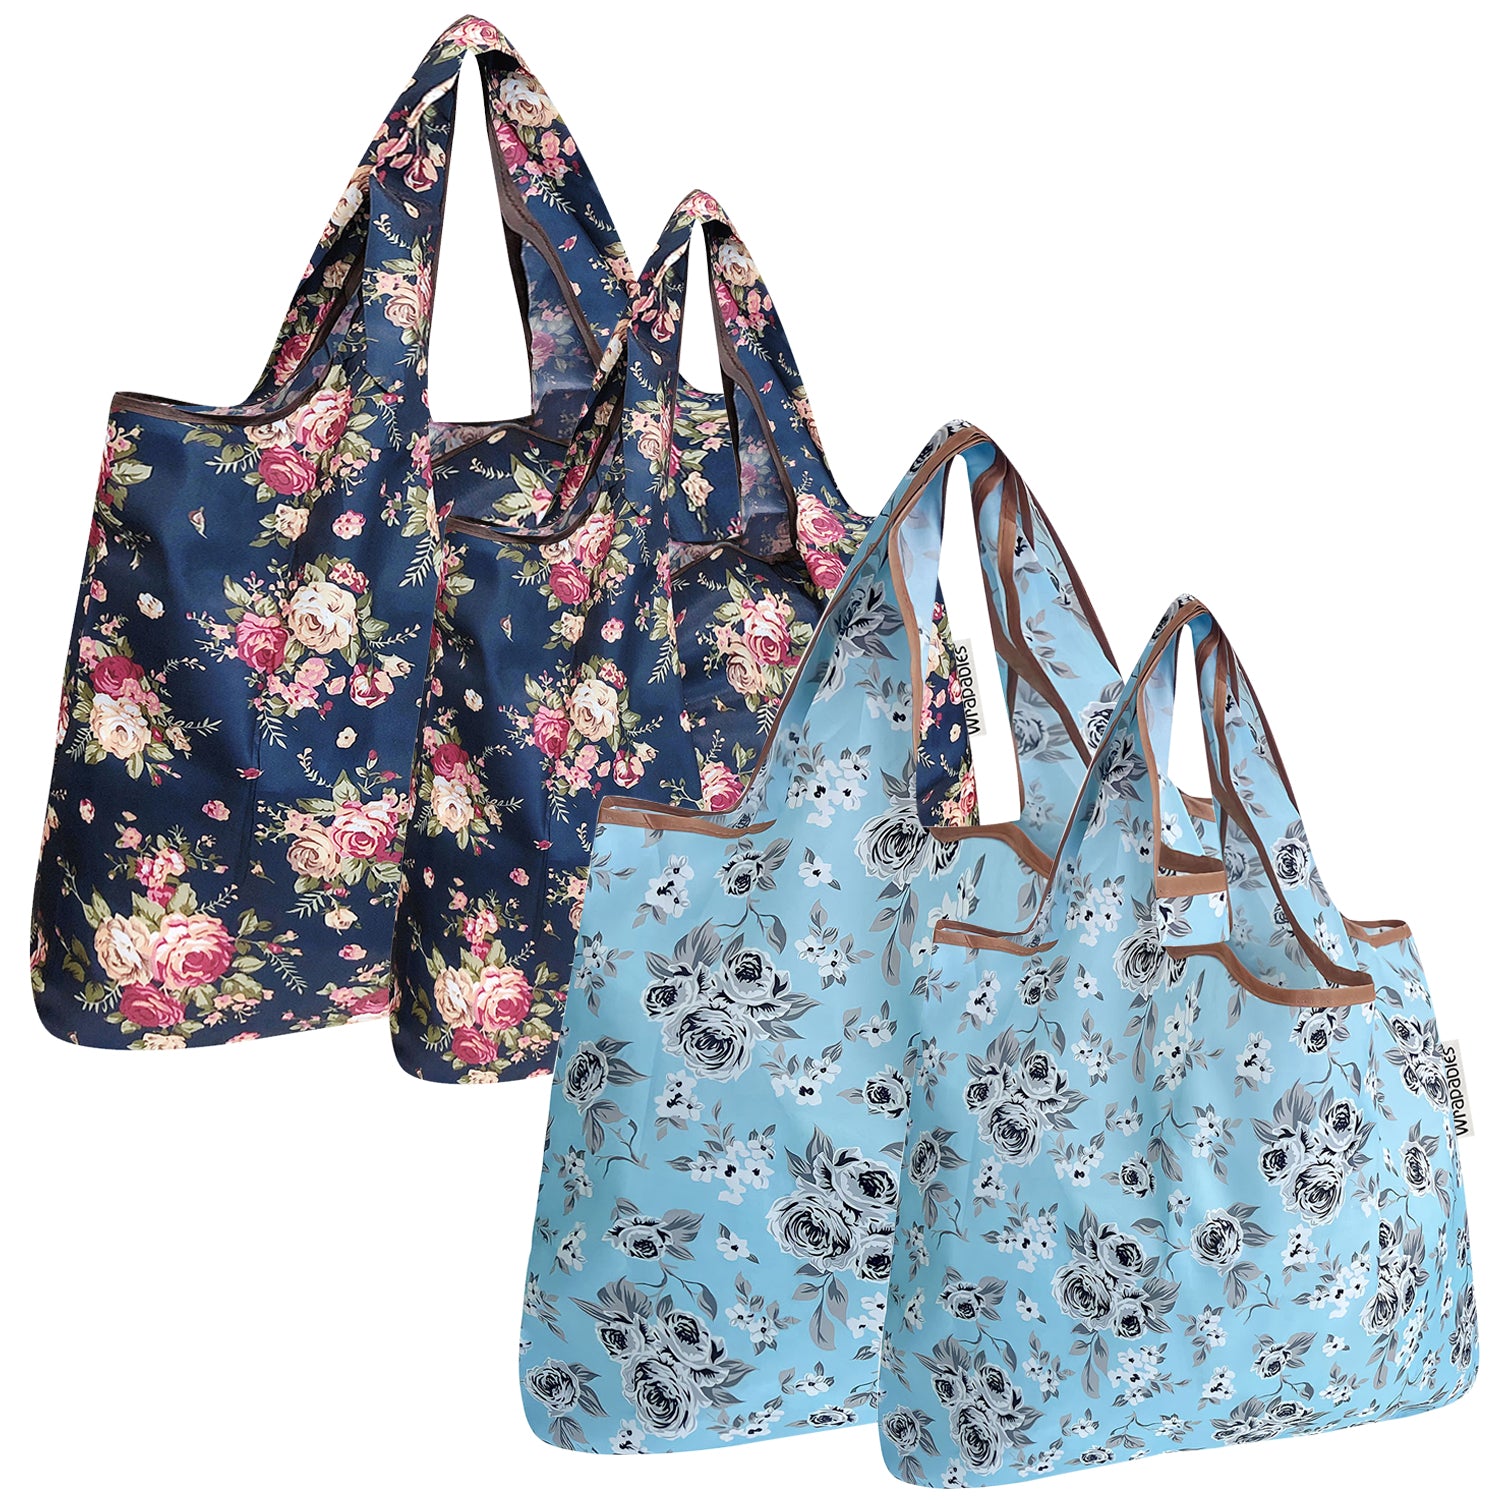 Homemade Reusable Bags (Bigger & Smaller!)